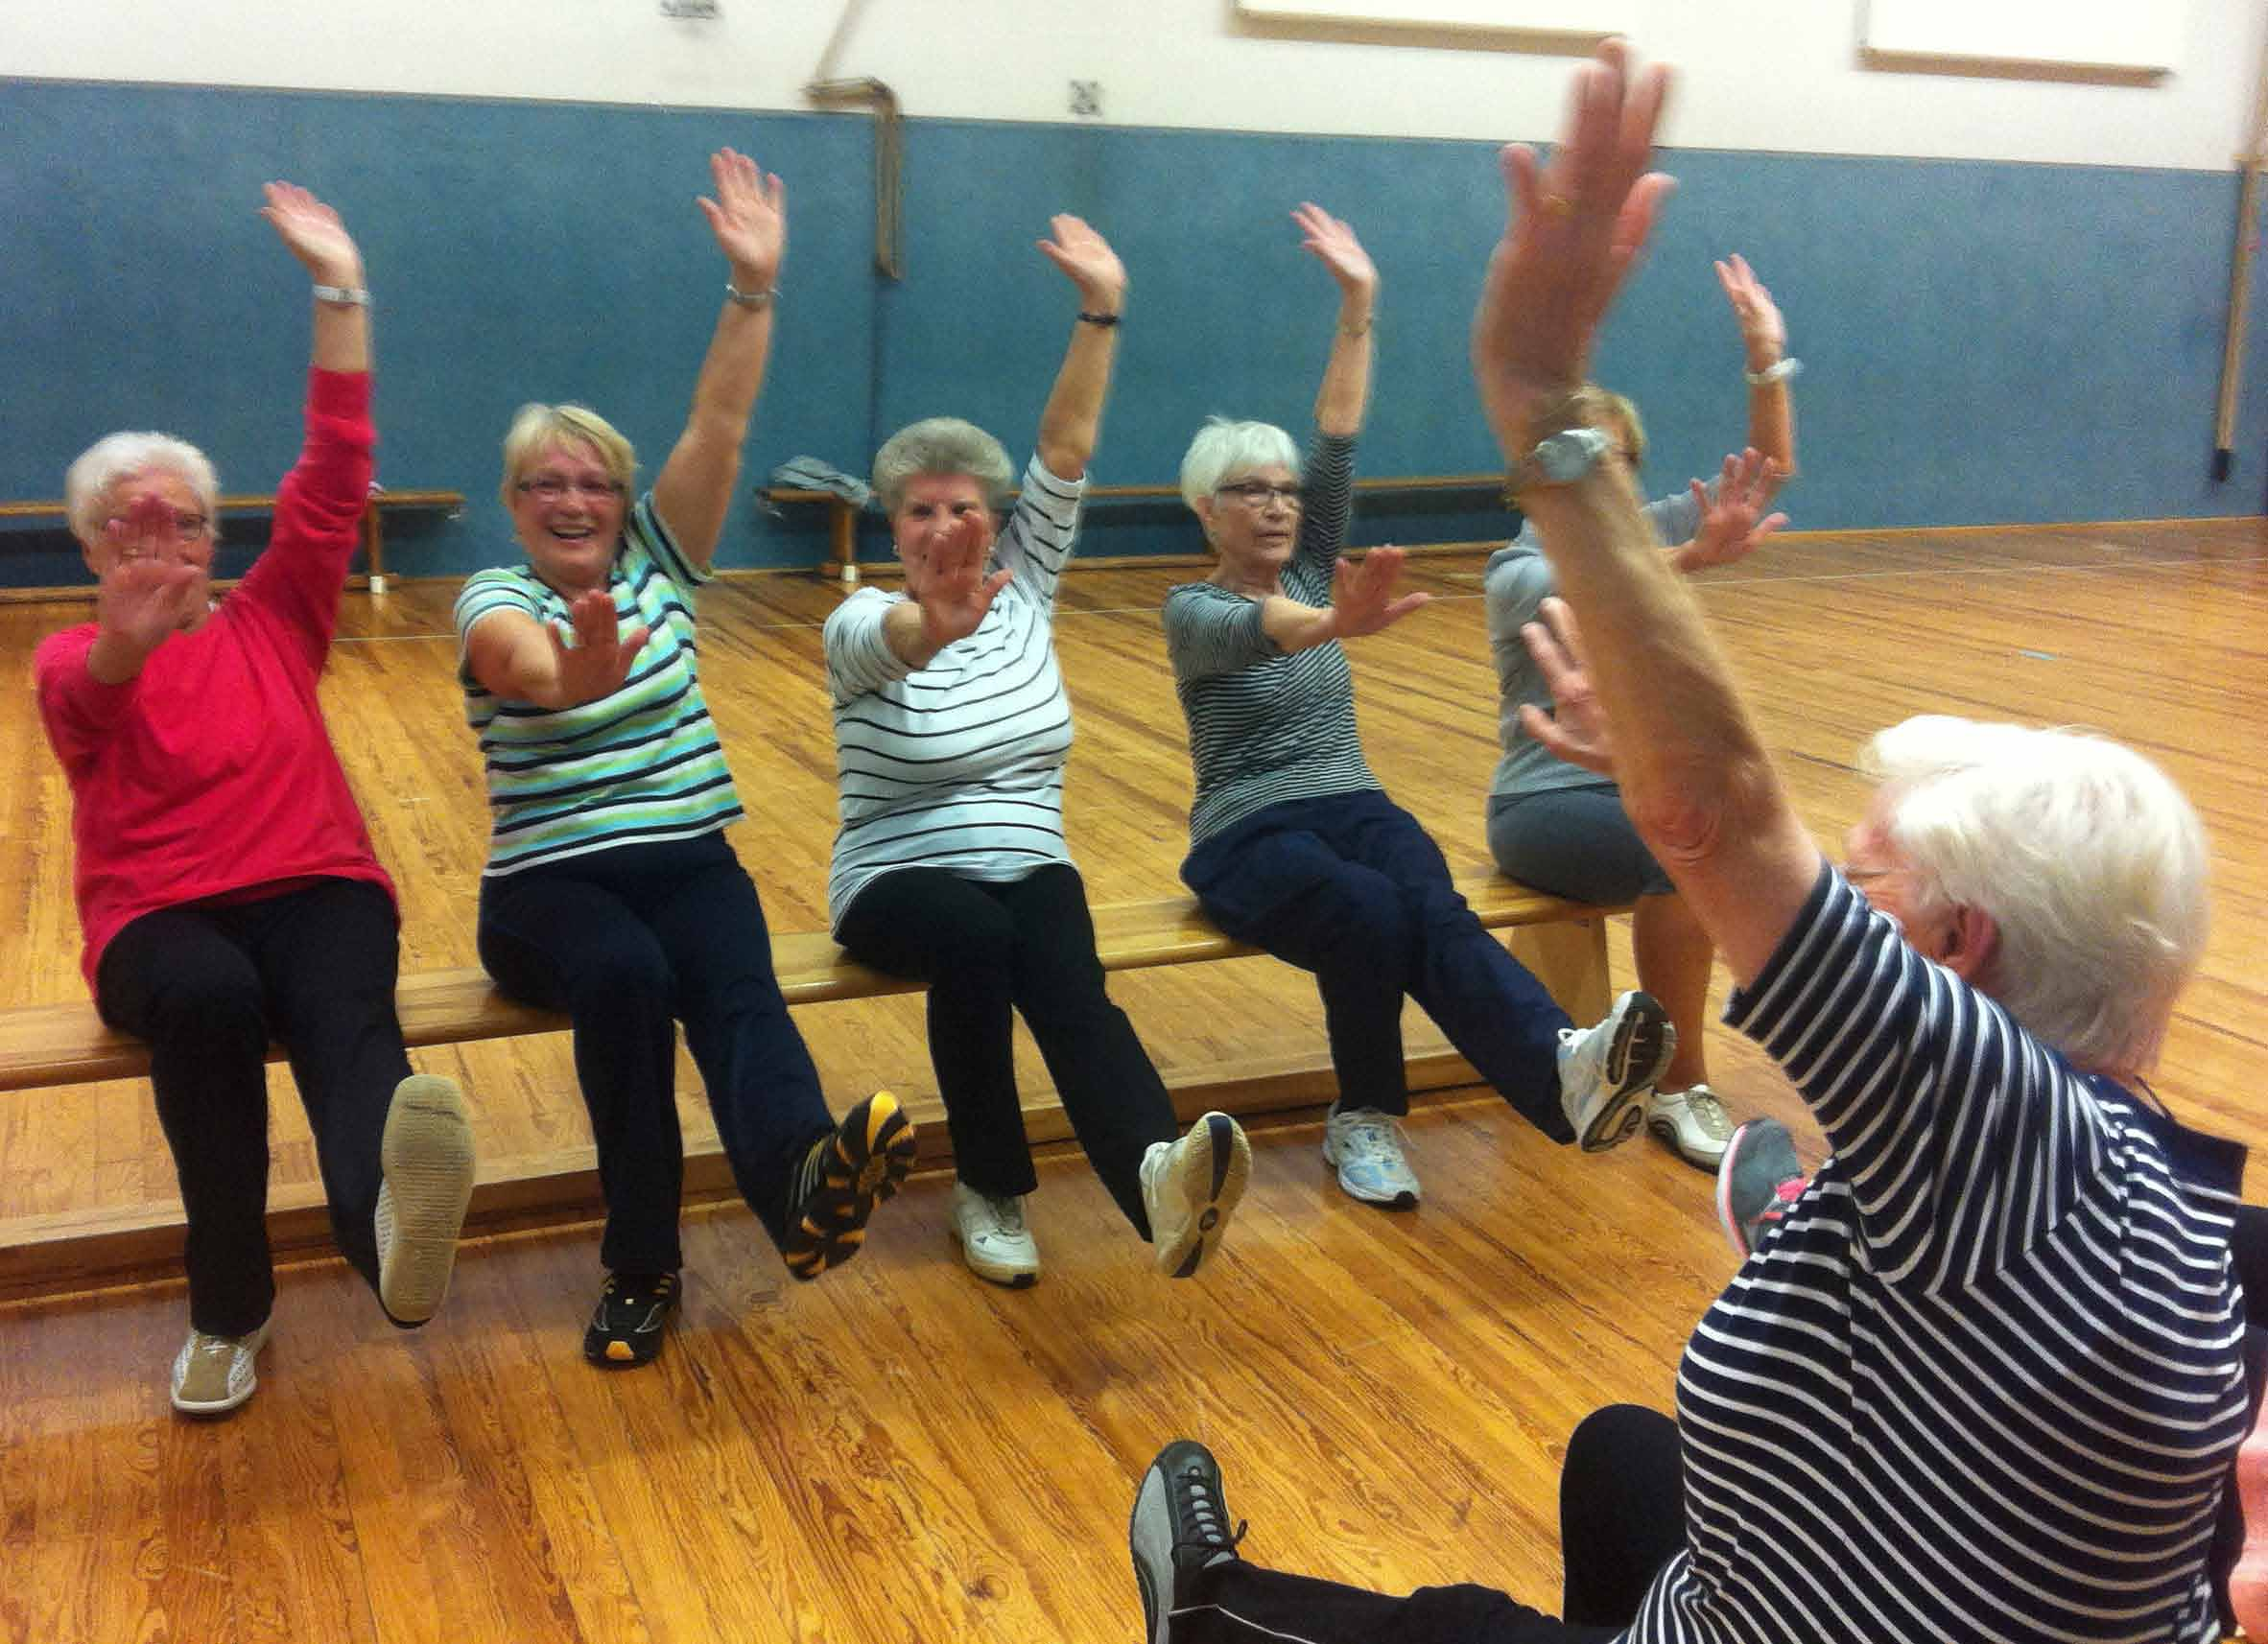 Seniorensport Eine Gruppe mit vielen treuen Mitgliedern bildet der Seniorensport. Zusammen einen Fallschirm bändigen oder die Bauchmuskeln trainieren gemeinsam macht es mehr Spaß.